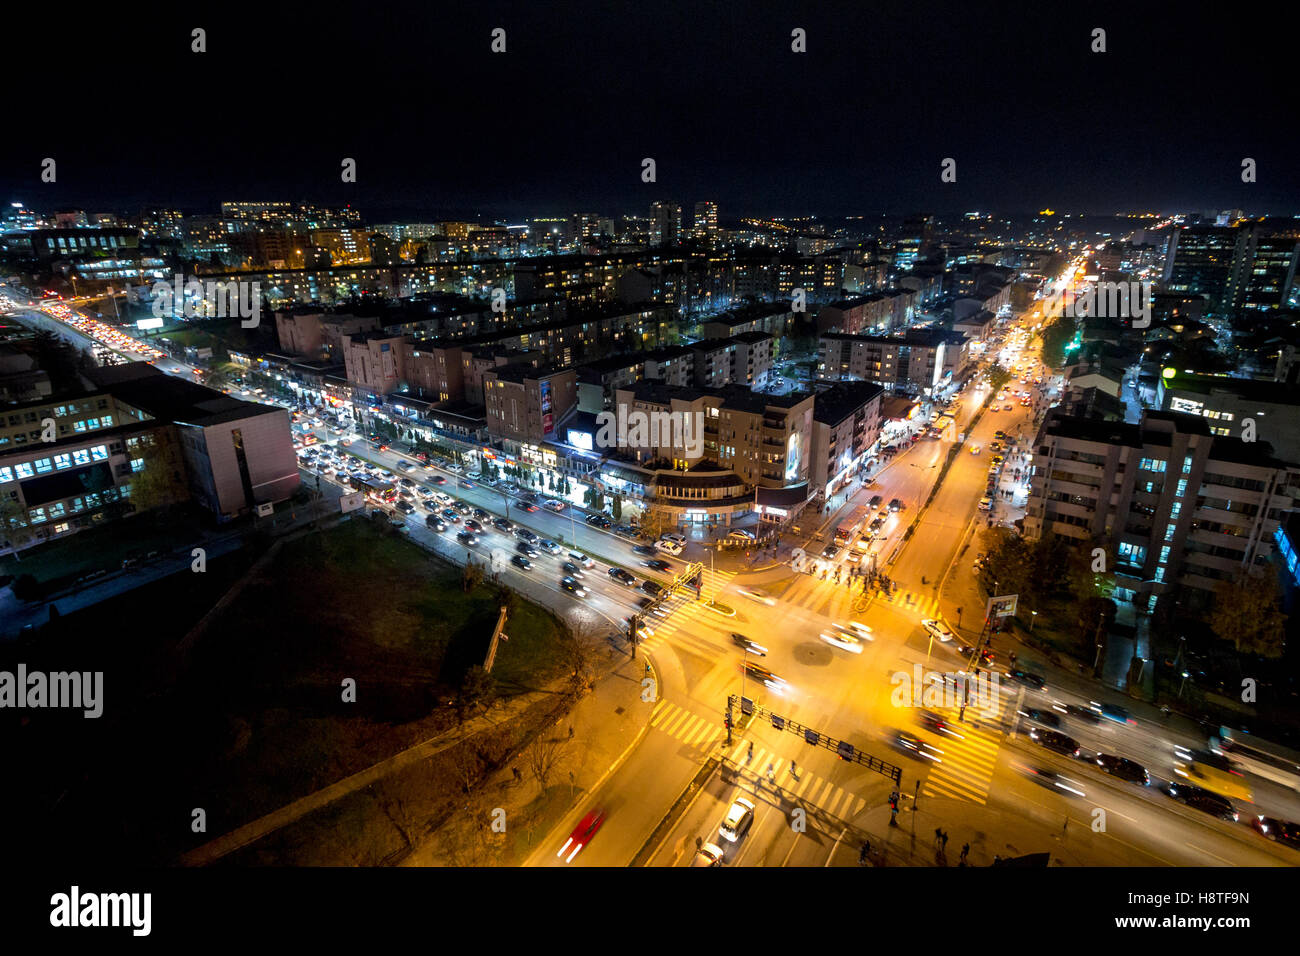 Nachtansicht von der Kreuzung zwischen Bill Clinton Boulevard / w. Boulevard in Pristina, Kosovo. Stockfoto